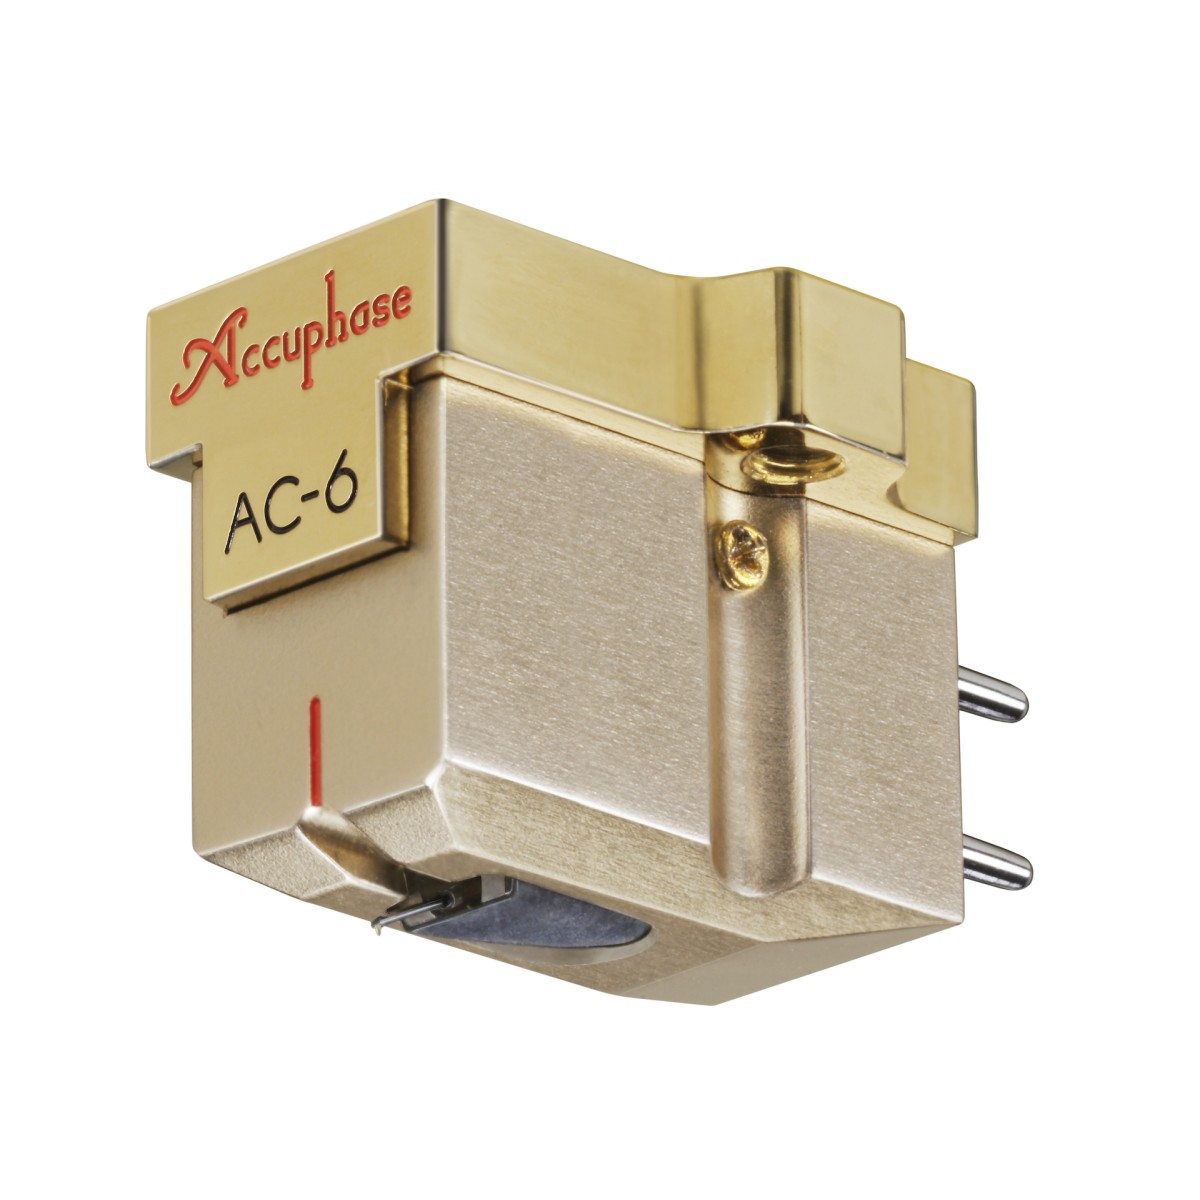 Hier sehen Sie den Artikel AC-6 MC Phono Cartridge aus der Kategorie Accessories Accuphase. Dieser Artikel ist erhältlich bei cebrands.ch